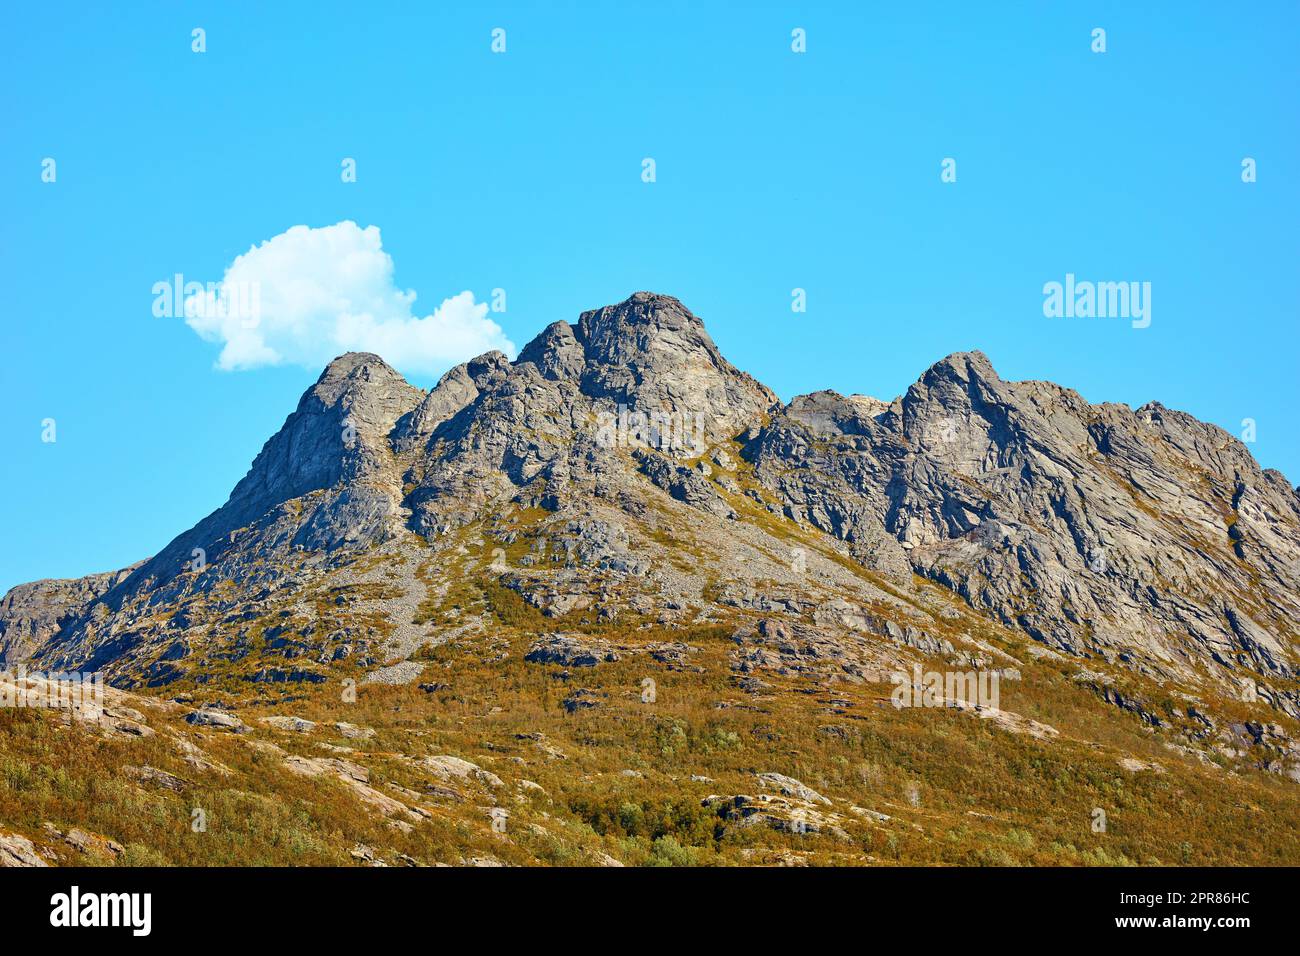 Landschaftsblick auf die Berge, blauer Himmel mit Wolken und Kopierraum in Norwegen. Wandern, Entdecken der malerischen Landschaft und des rauen Geländes. Die Sonne scheint auf einem weiten Naturschutzgebiet und Wanderweg Stockfoto